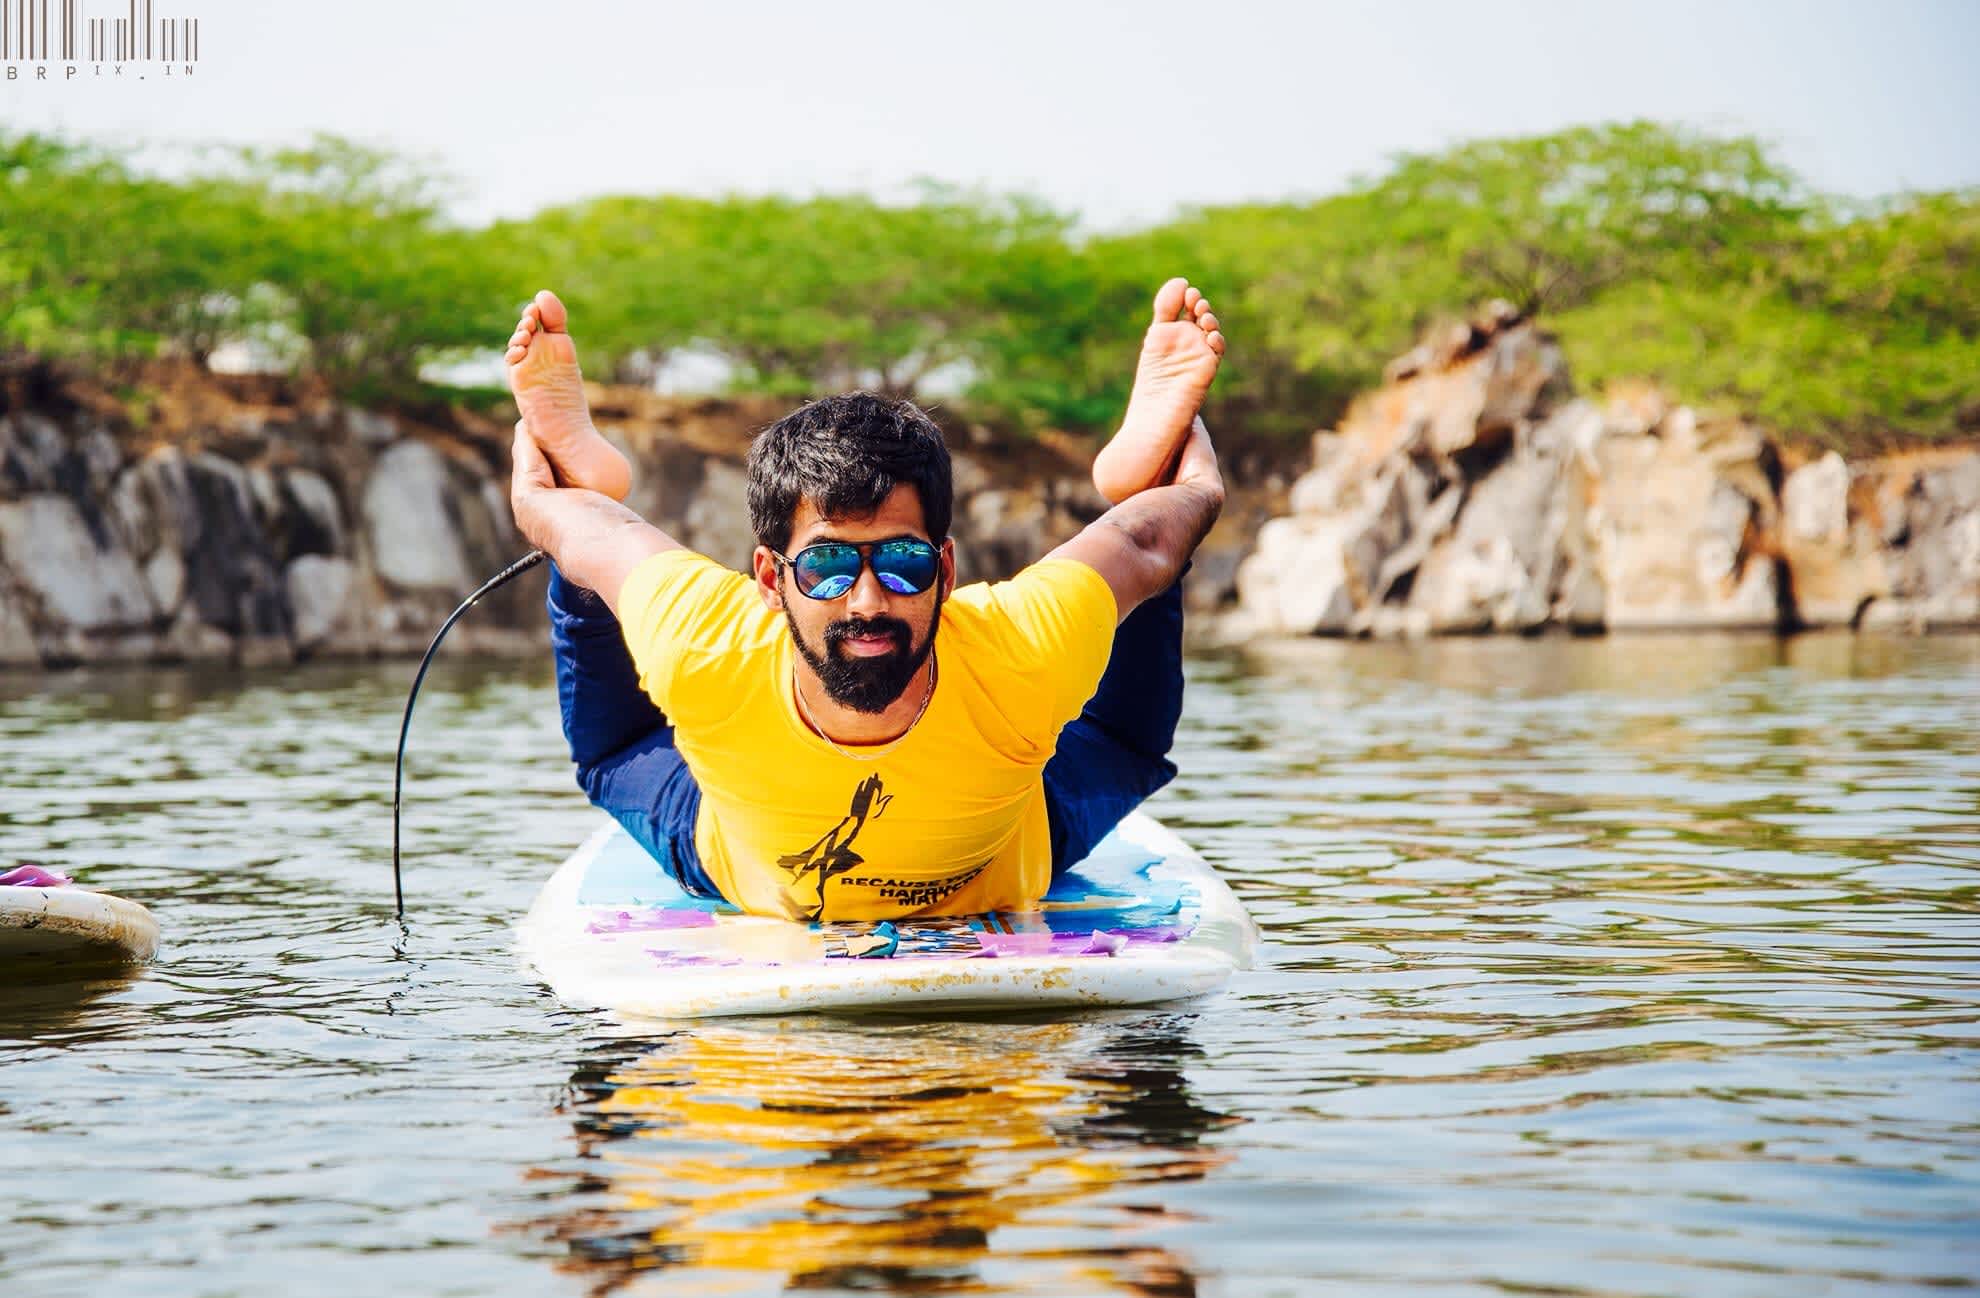 Dhanurasana on paddle board by Sarvesh Shashi.